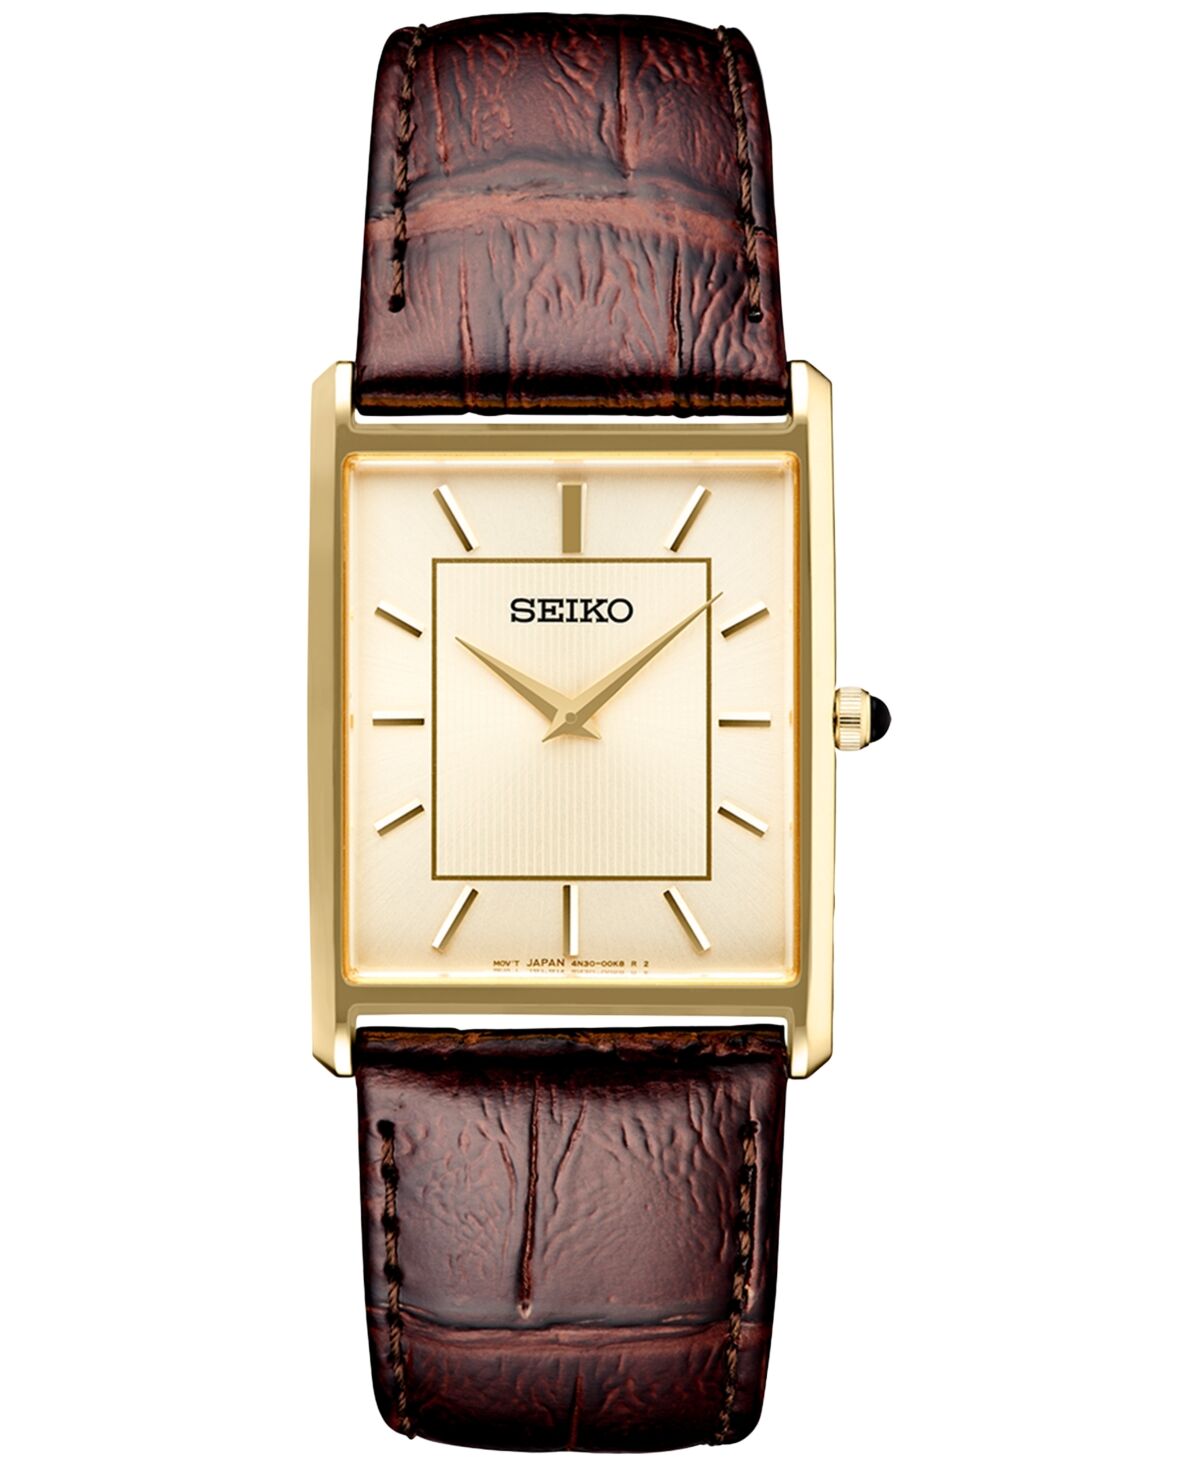 Seiko Men's Essentials Brown Leather Strap Watch 29mm - Gold